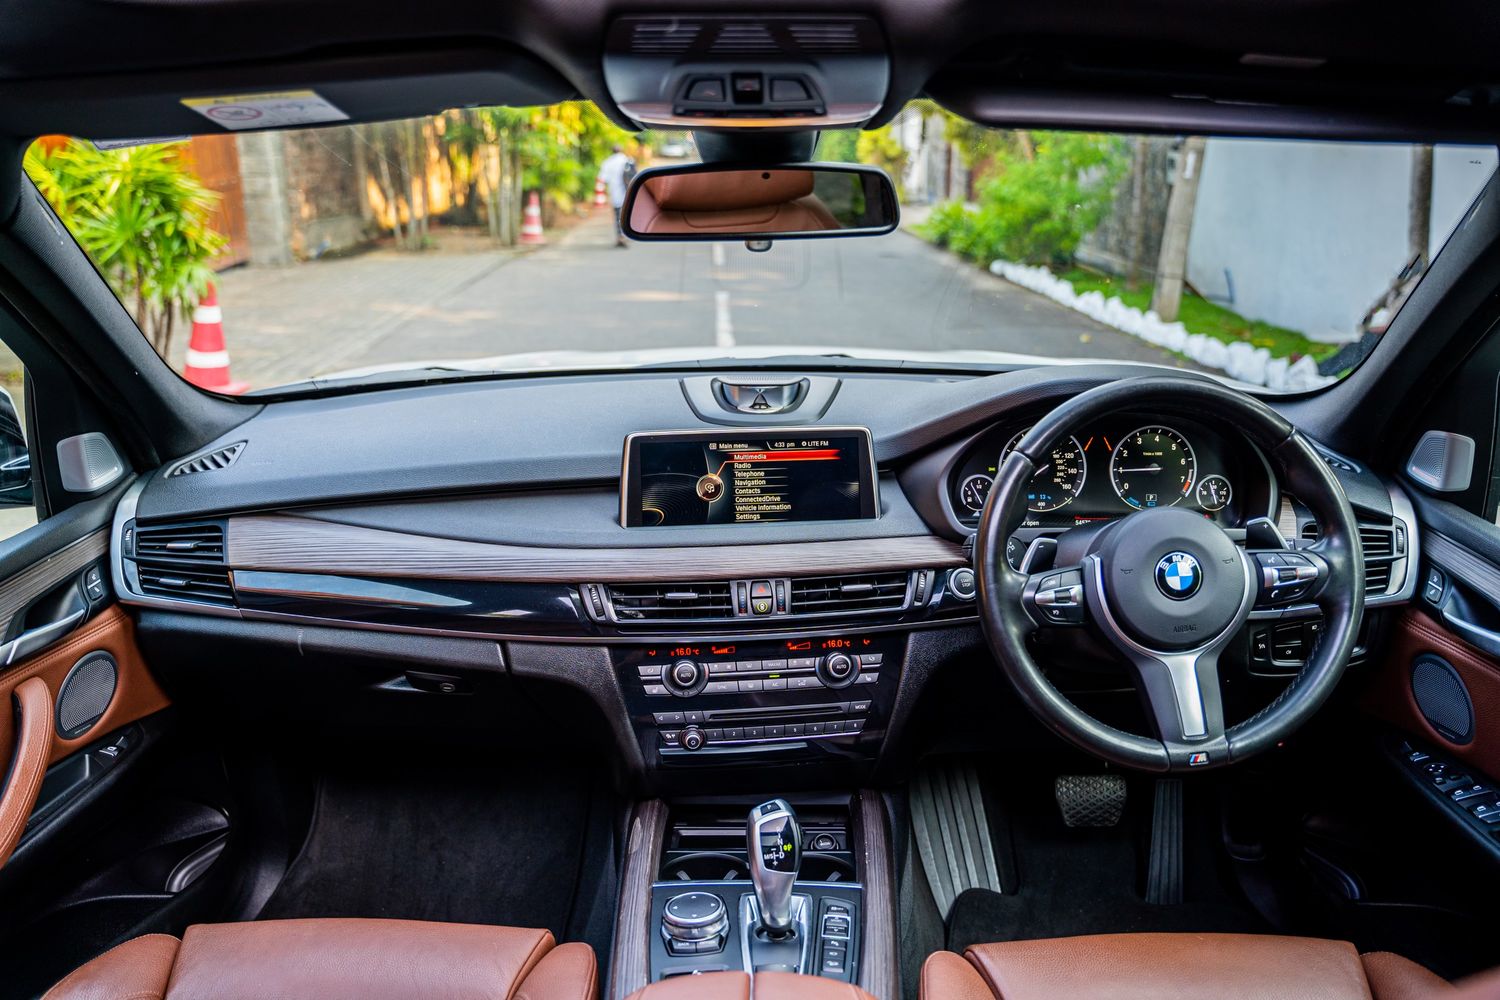 BMW X5 front interior + dashboard